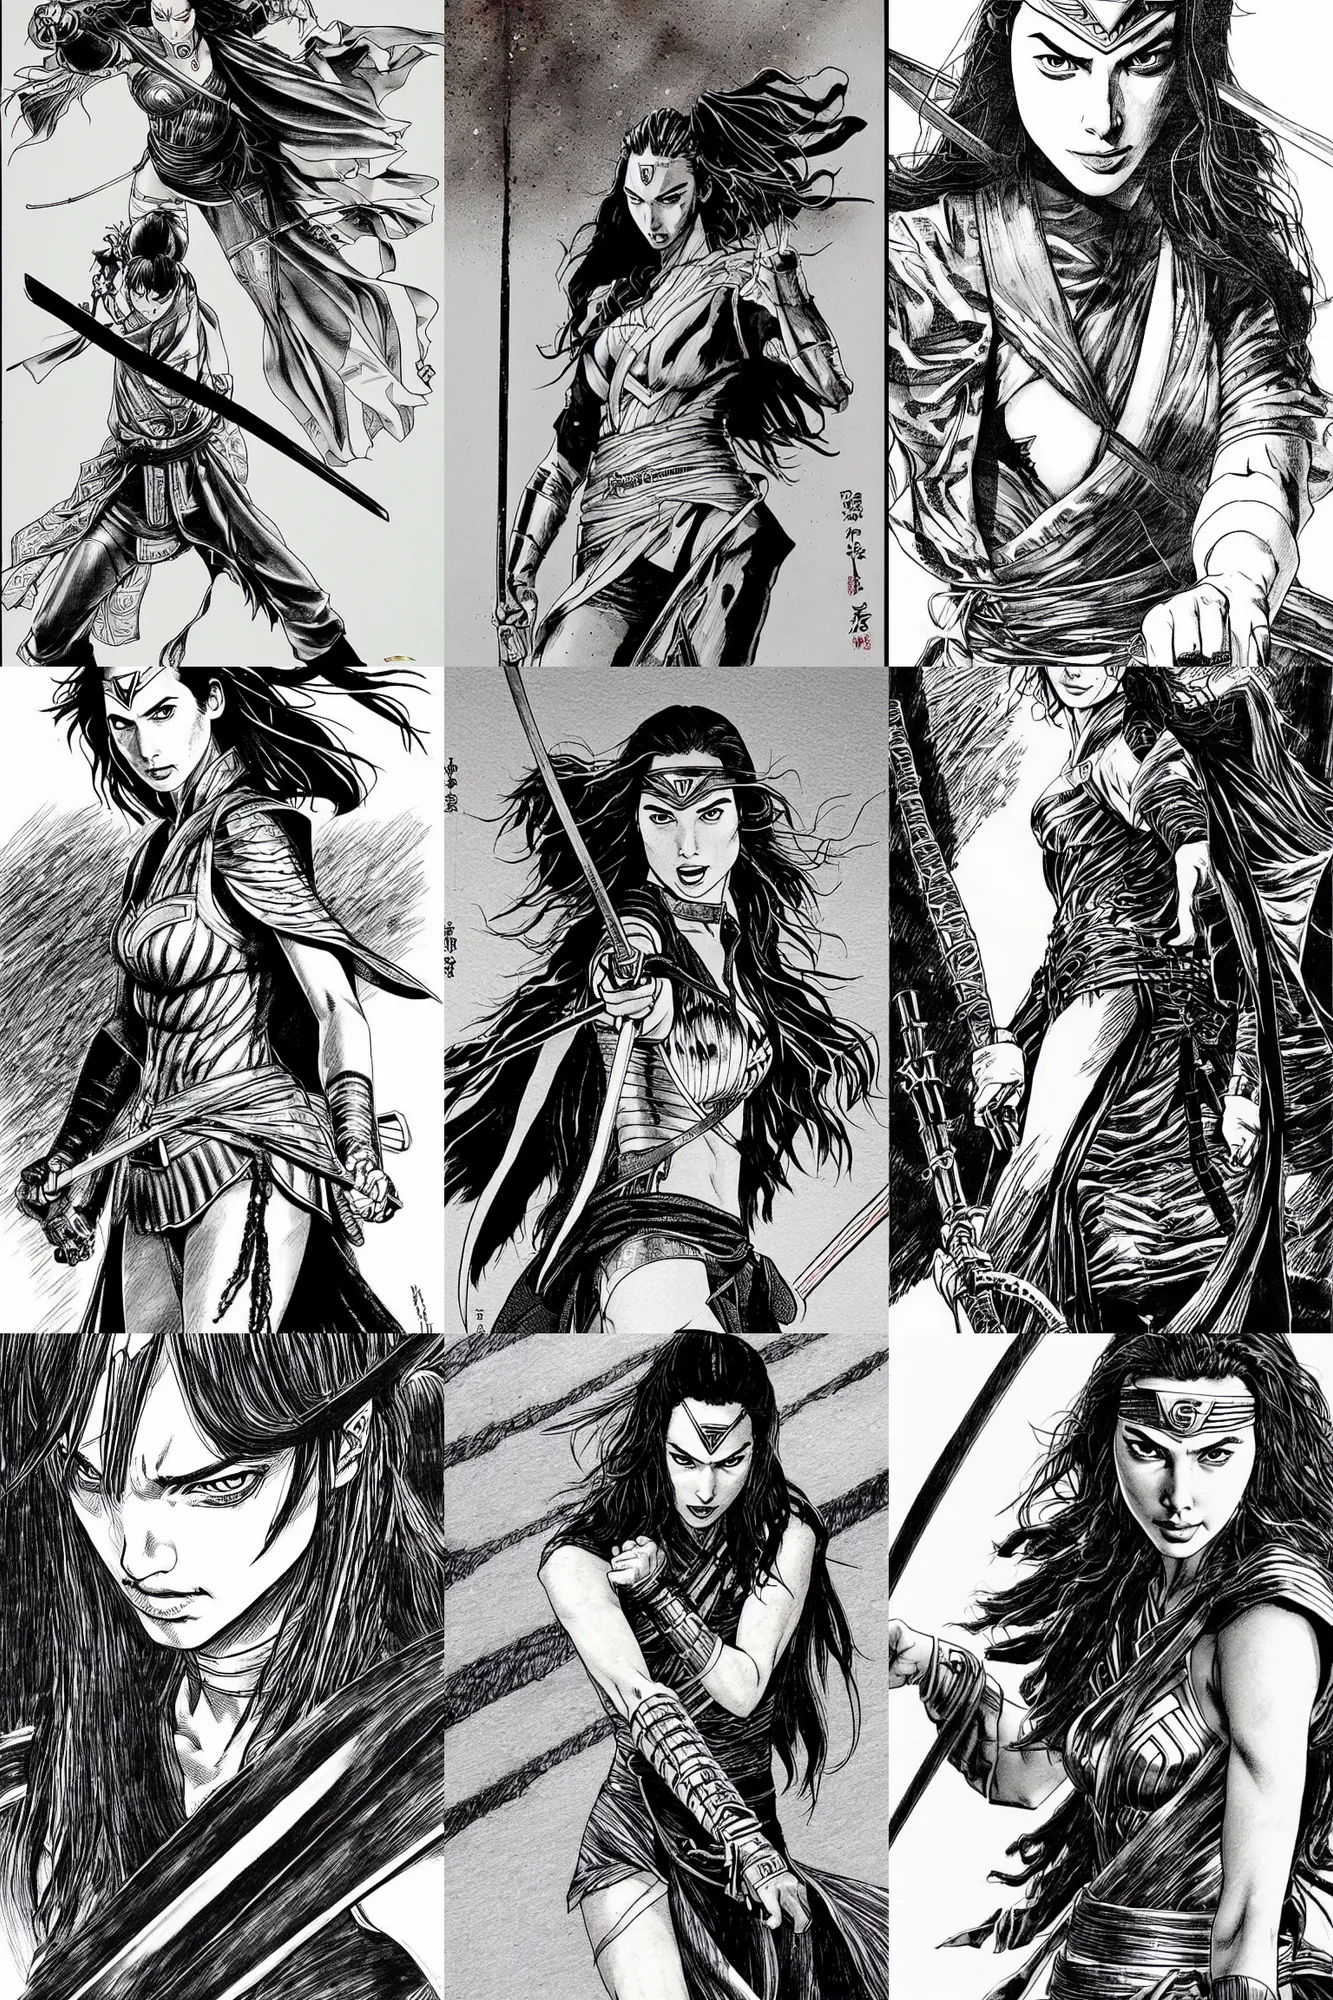 Prompt: detailed gal gadot as samurai in vagabond manga by takehiko inoue, black ink